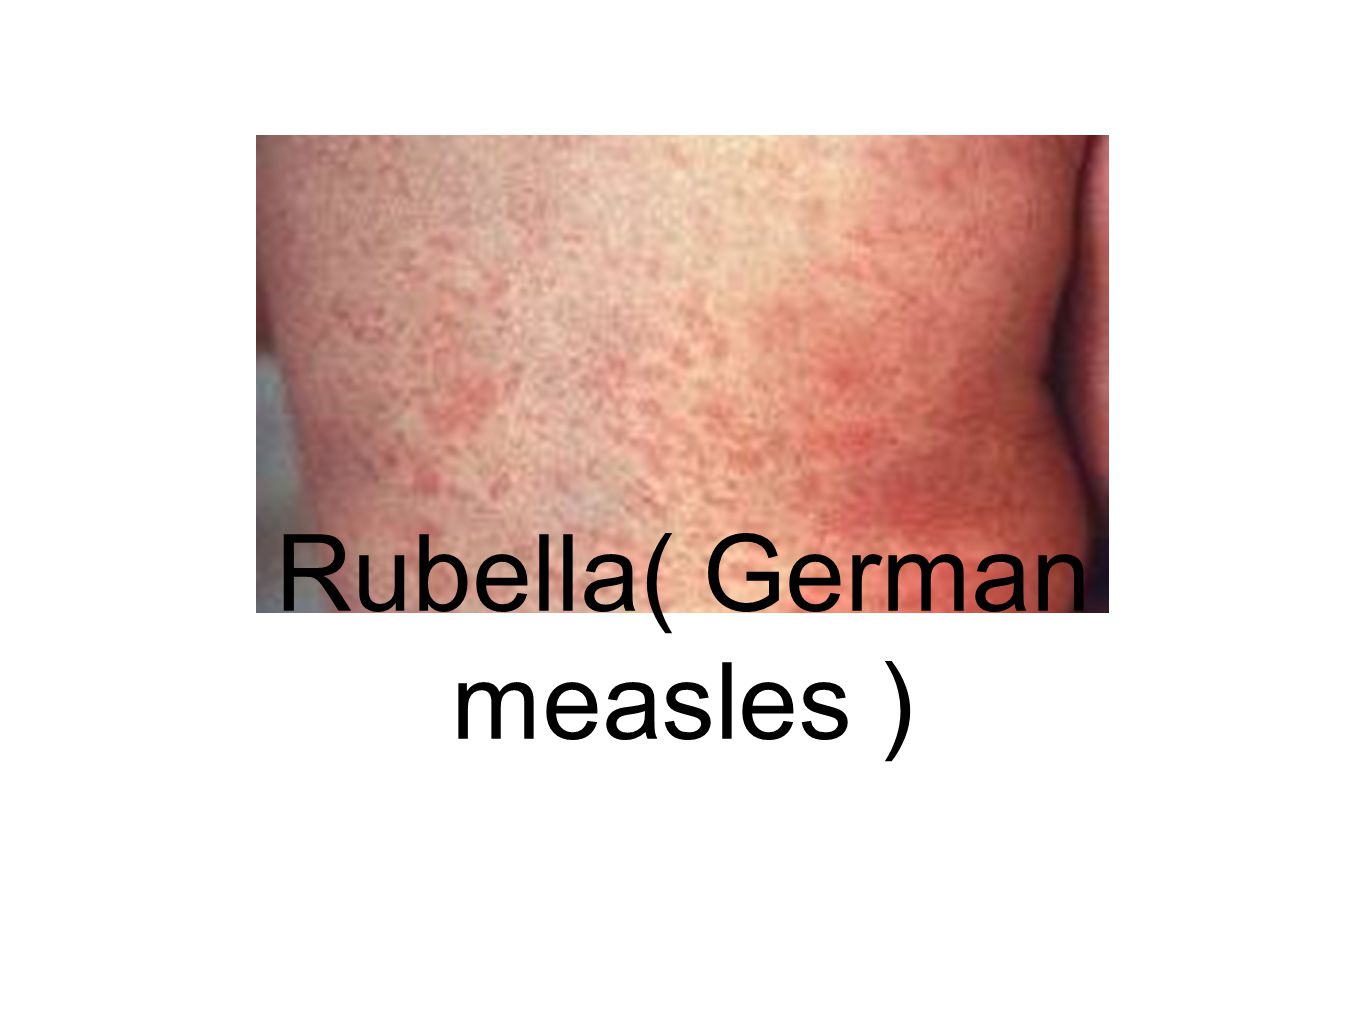 German Measles